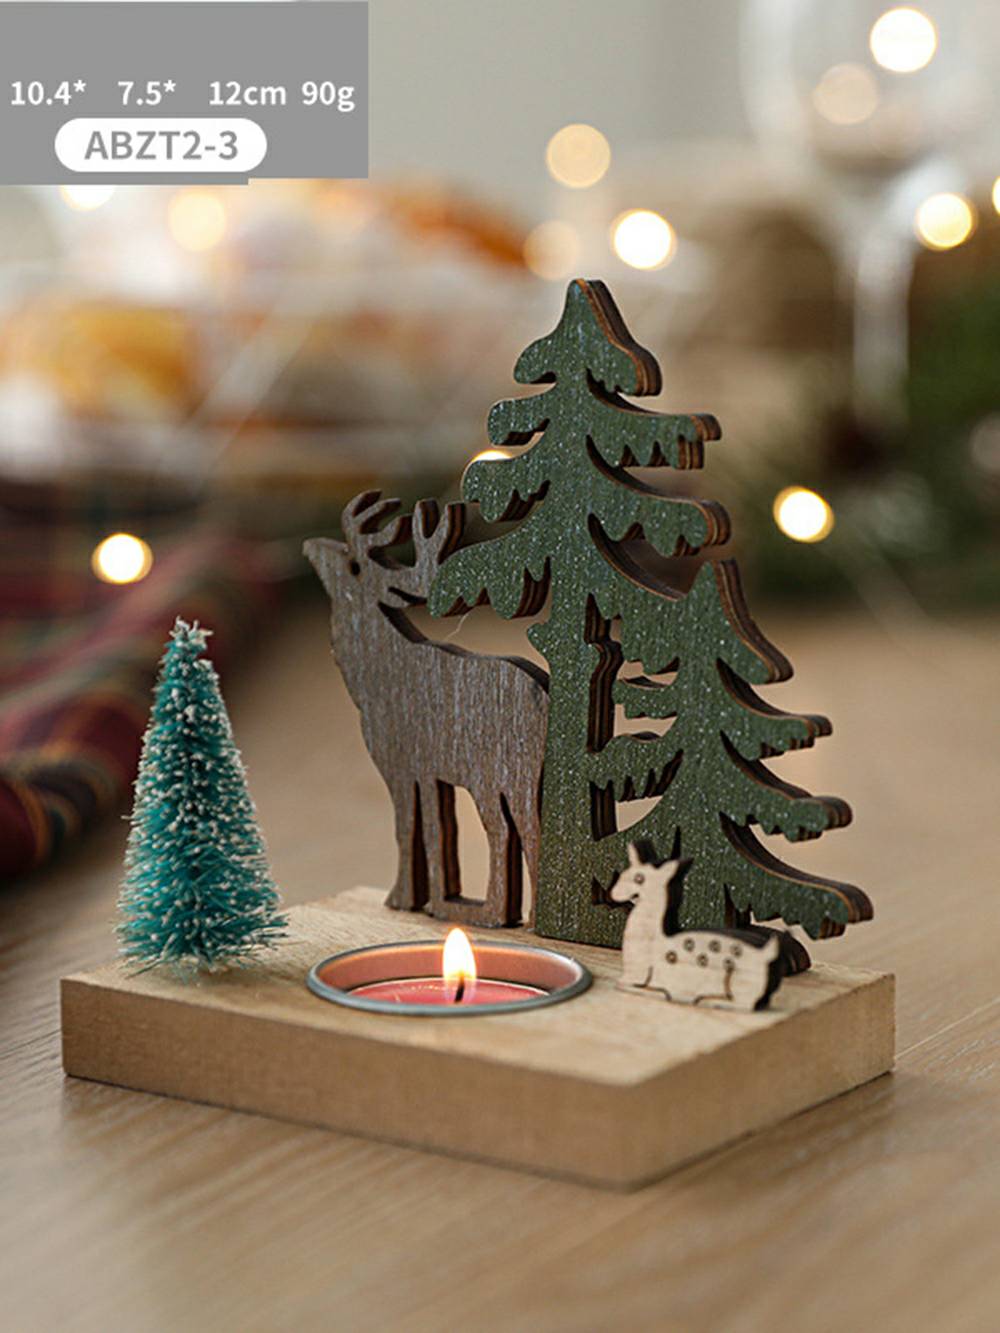 Portacandele con Babbo Natale e renna in stile nordico - Accento decorativo per cottage natalizio